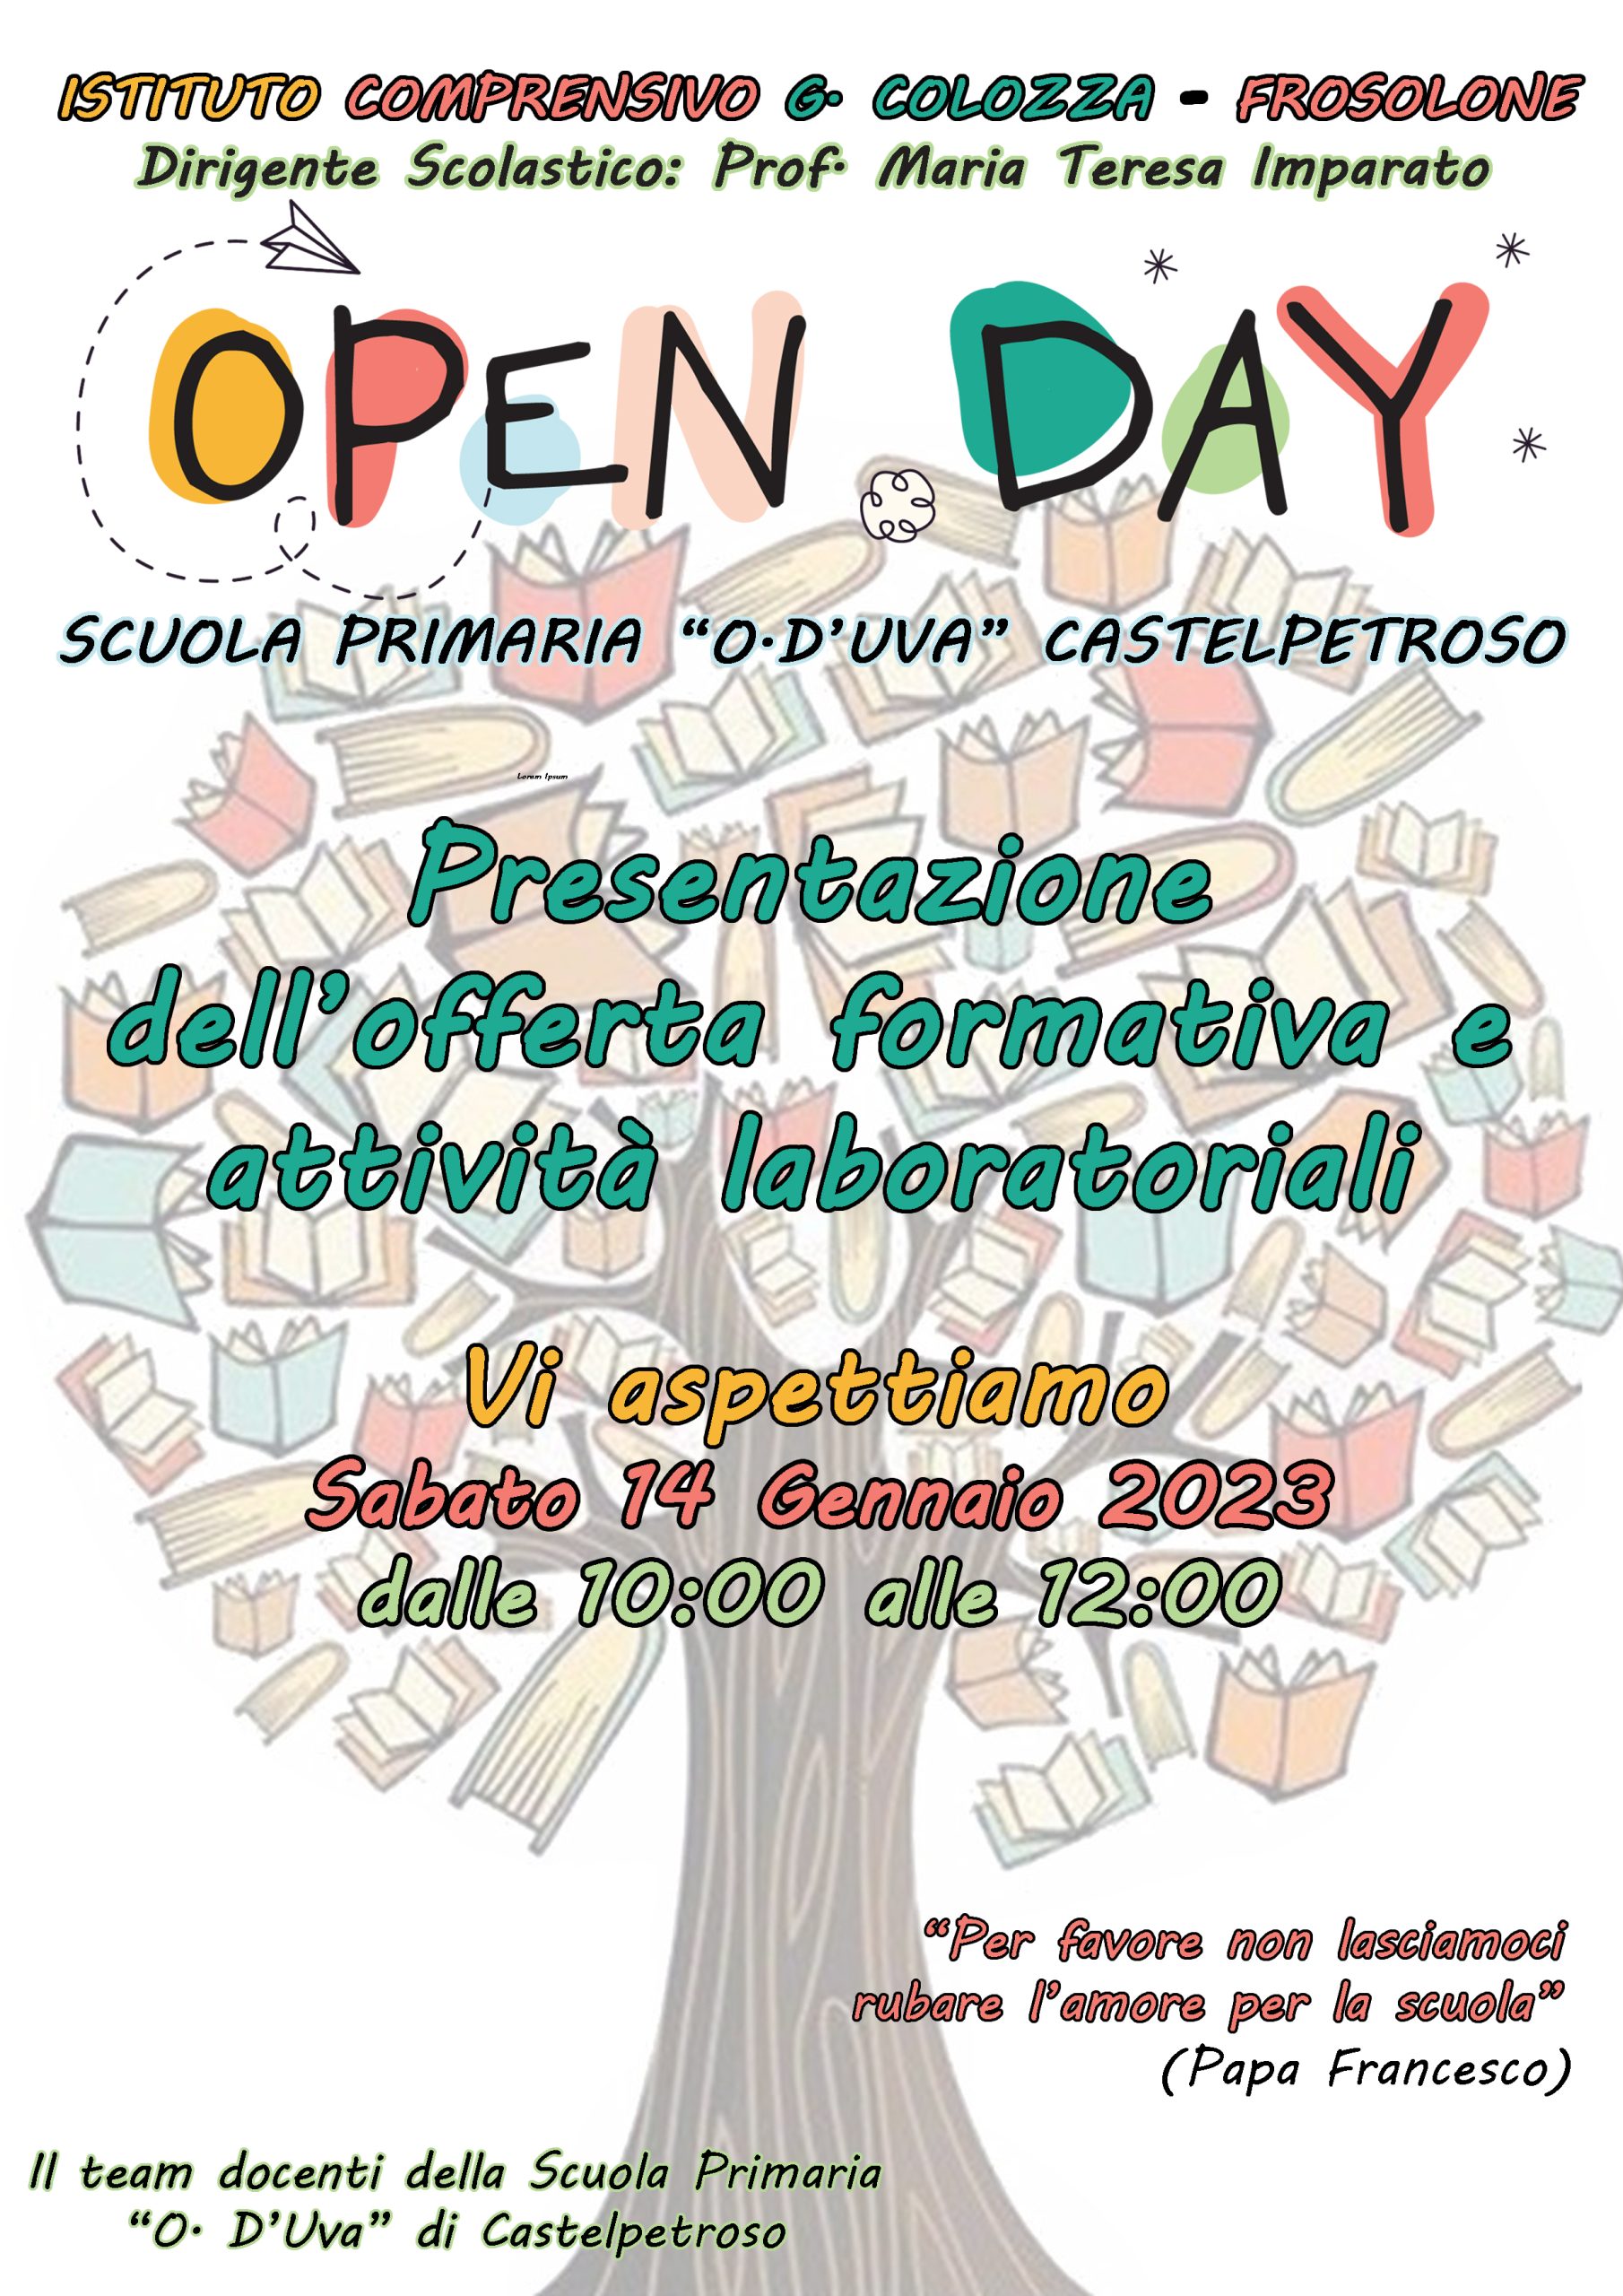 Al momento stai visualizzando Open Day Scuola Primaria di Castelpetroso